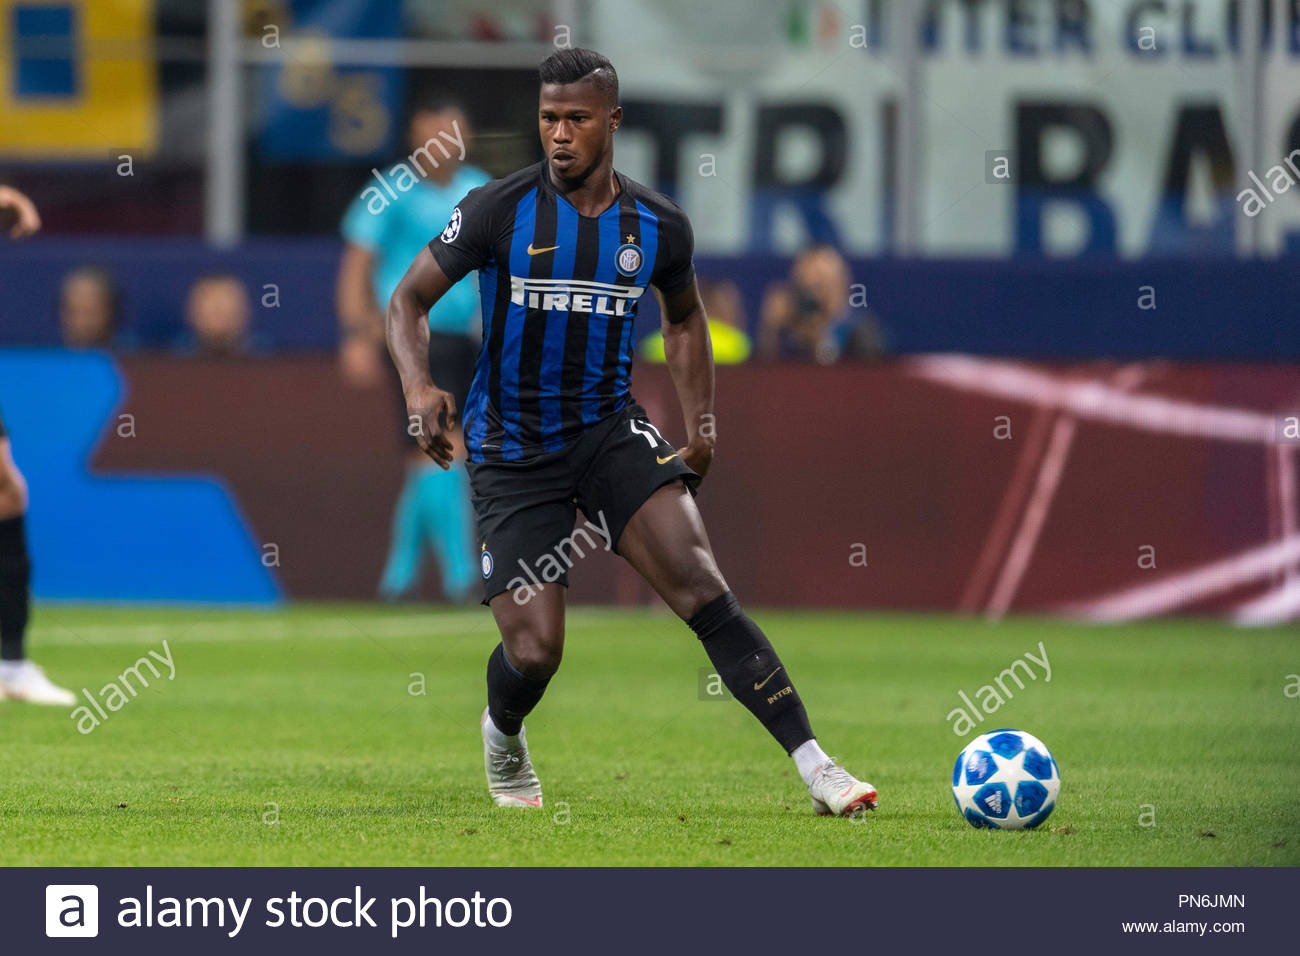 League Europa : Diao Baldé signe son retour, Inter Milan éliminé